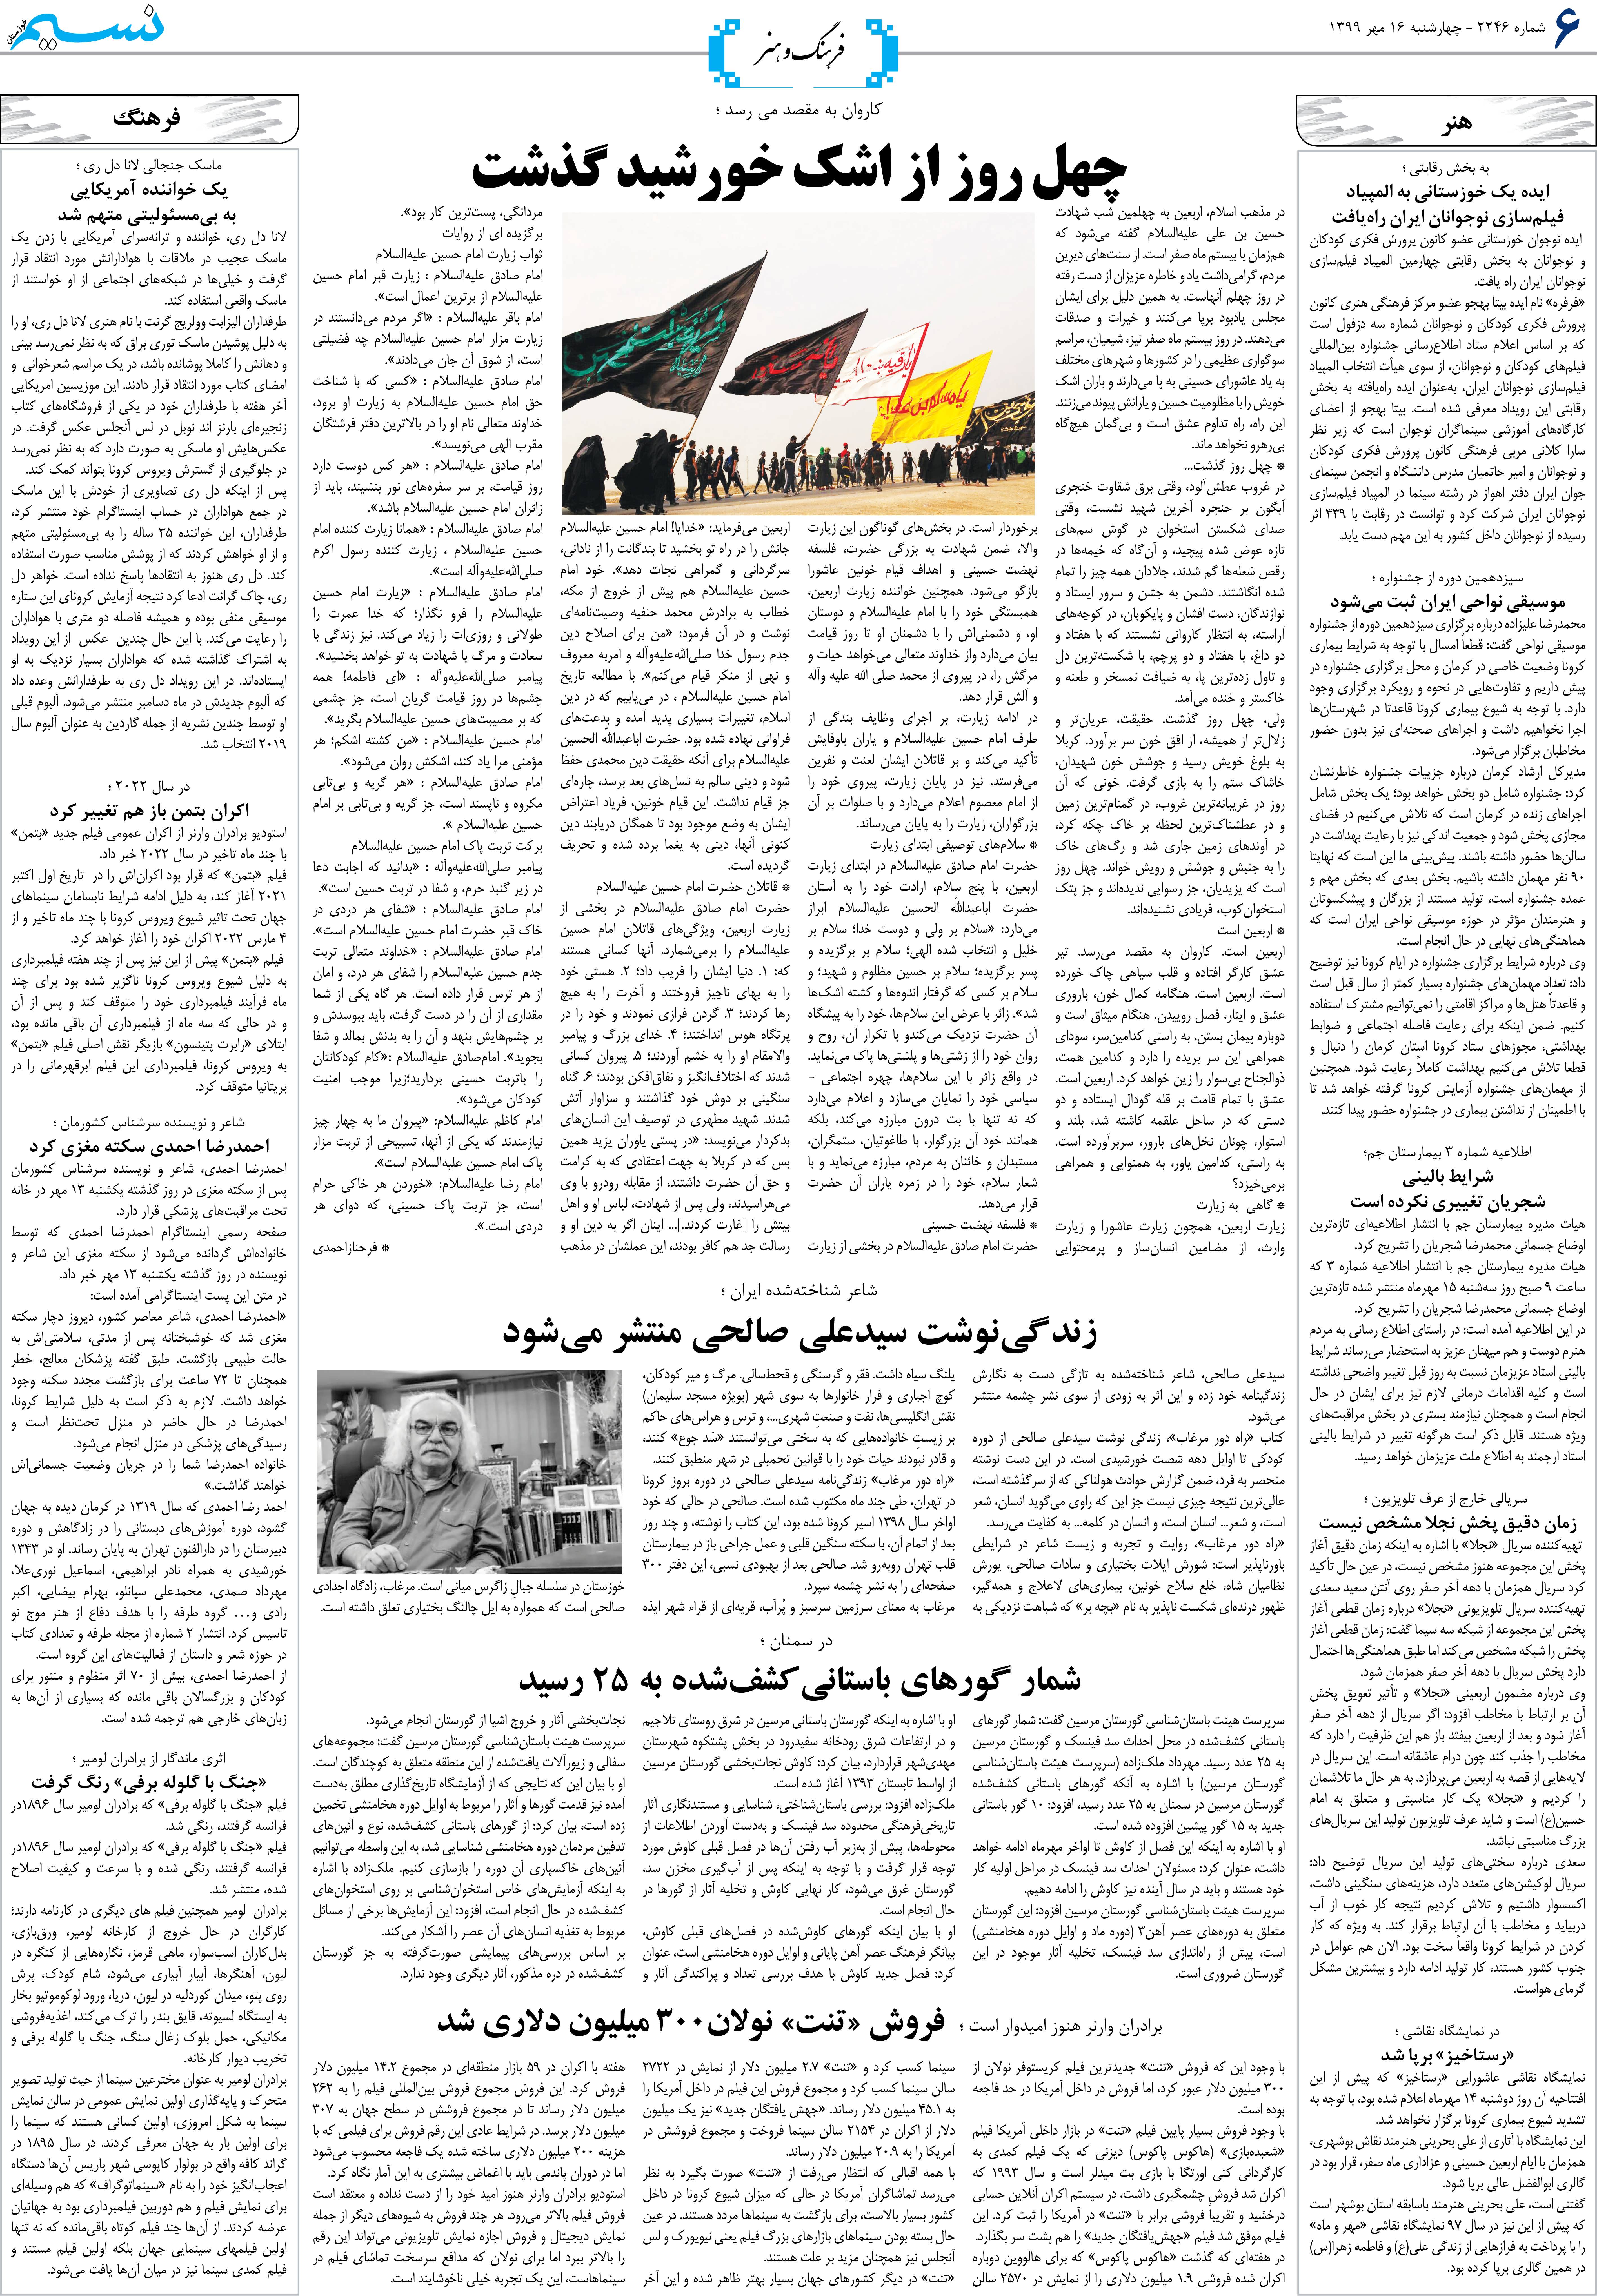 صفحه فرهنگ و هنر روزنامه نسیم شماره 2246